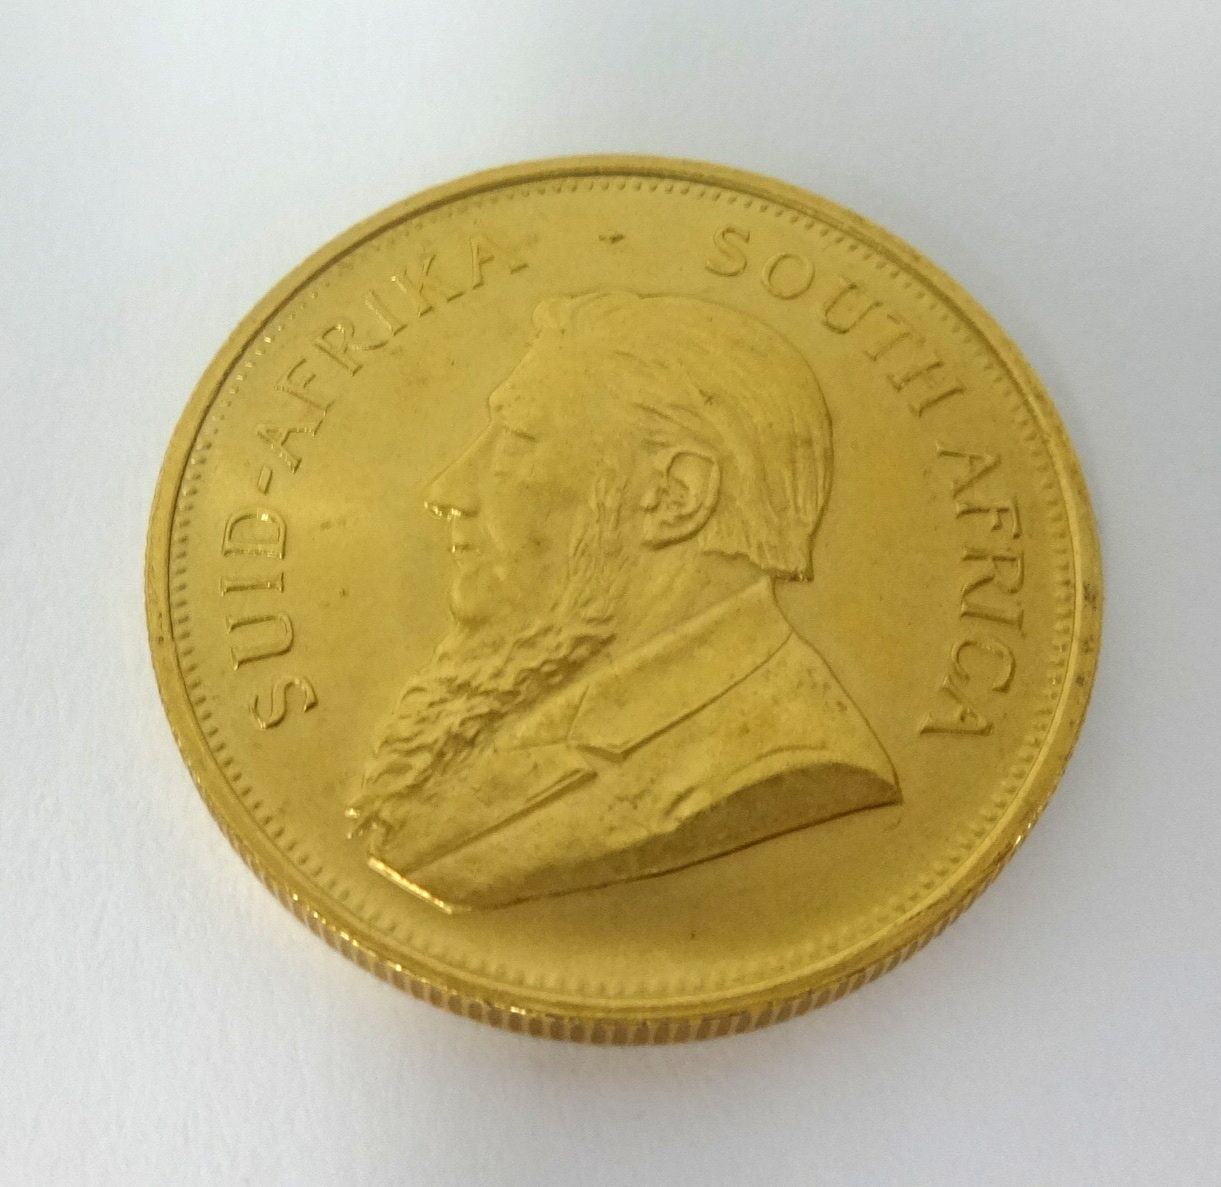 A 1974 gold Krugerrand.